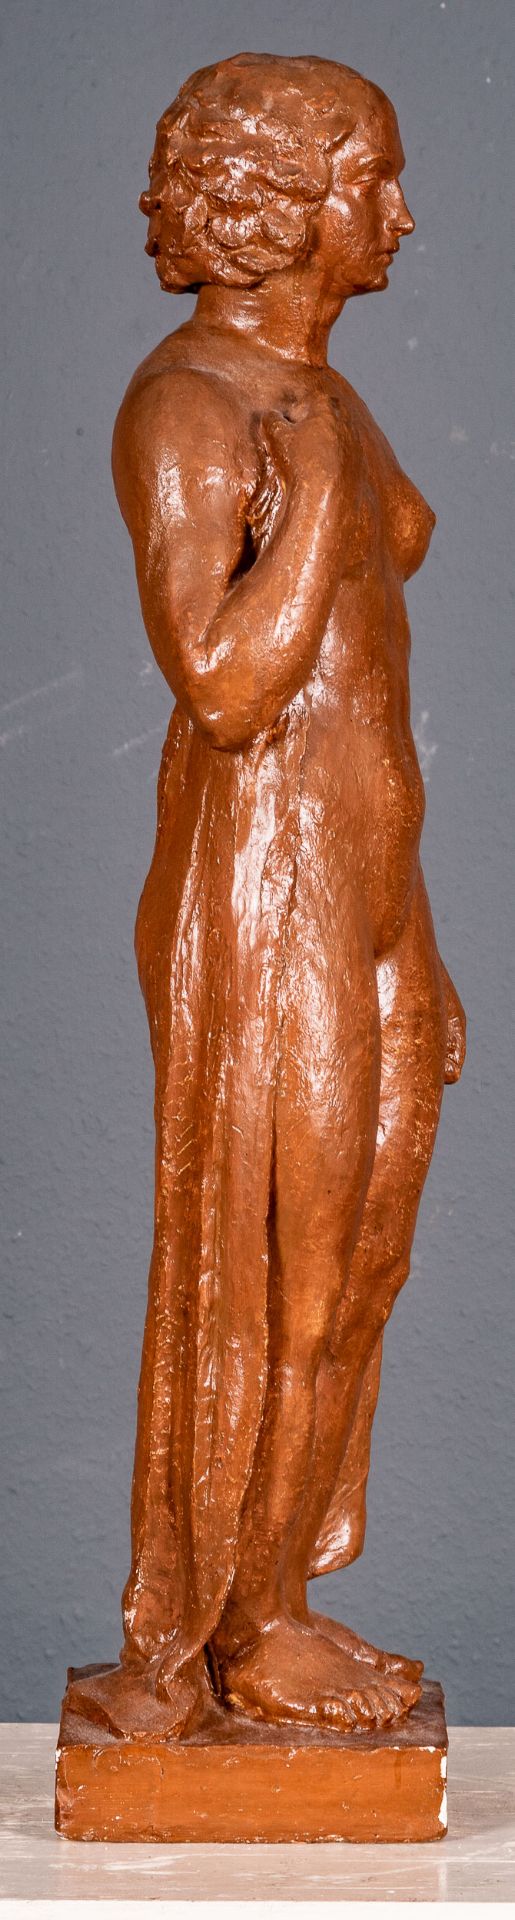 HEINRICH SCHLOTTER: "Die Badende" - Stukko, Standfigur von 1926. Nackte, stehende junge Frau, ihre  - Bild 8 aus 19